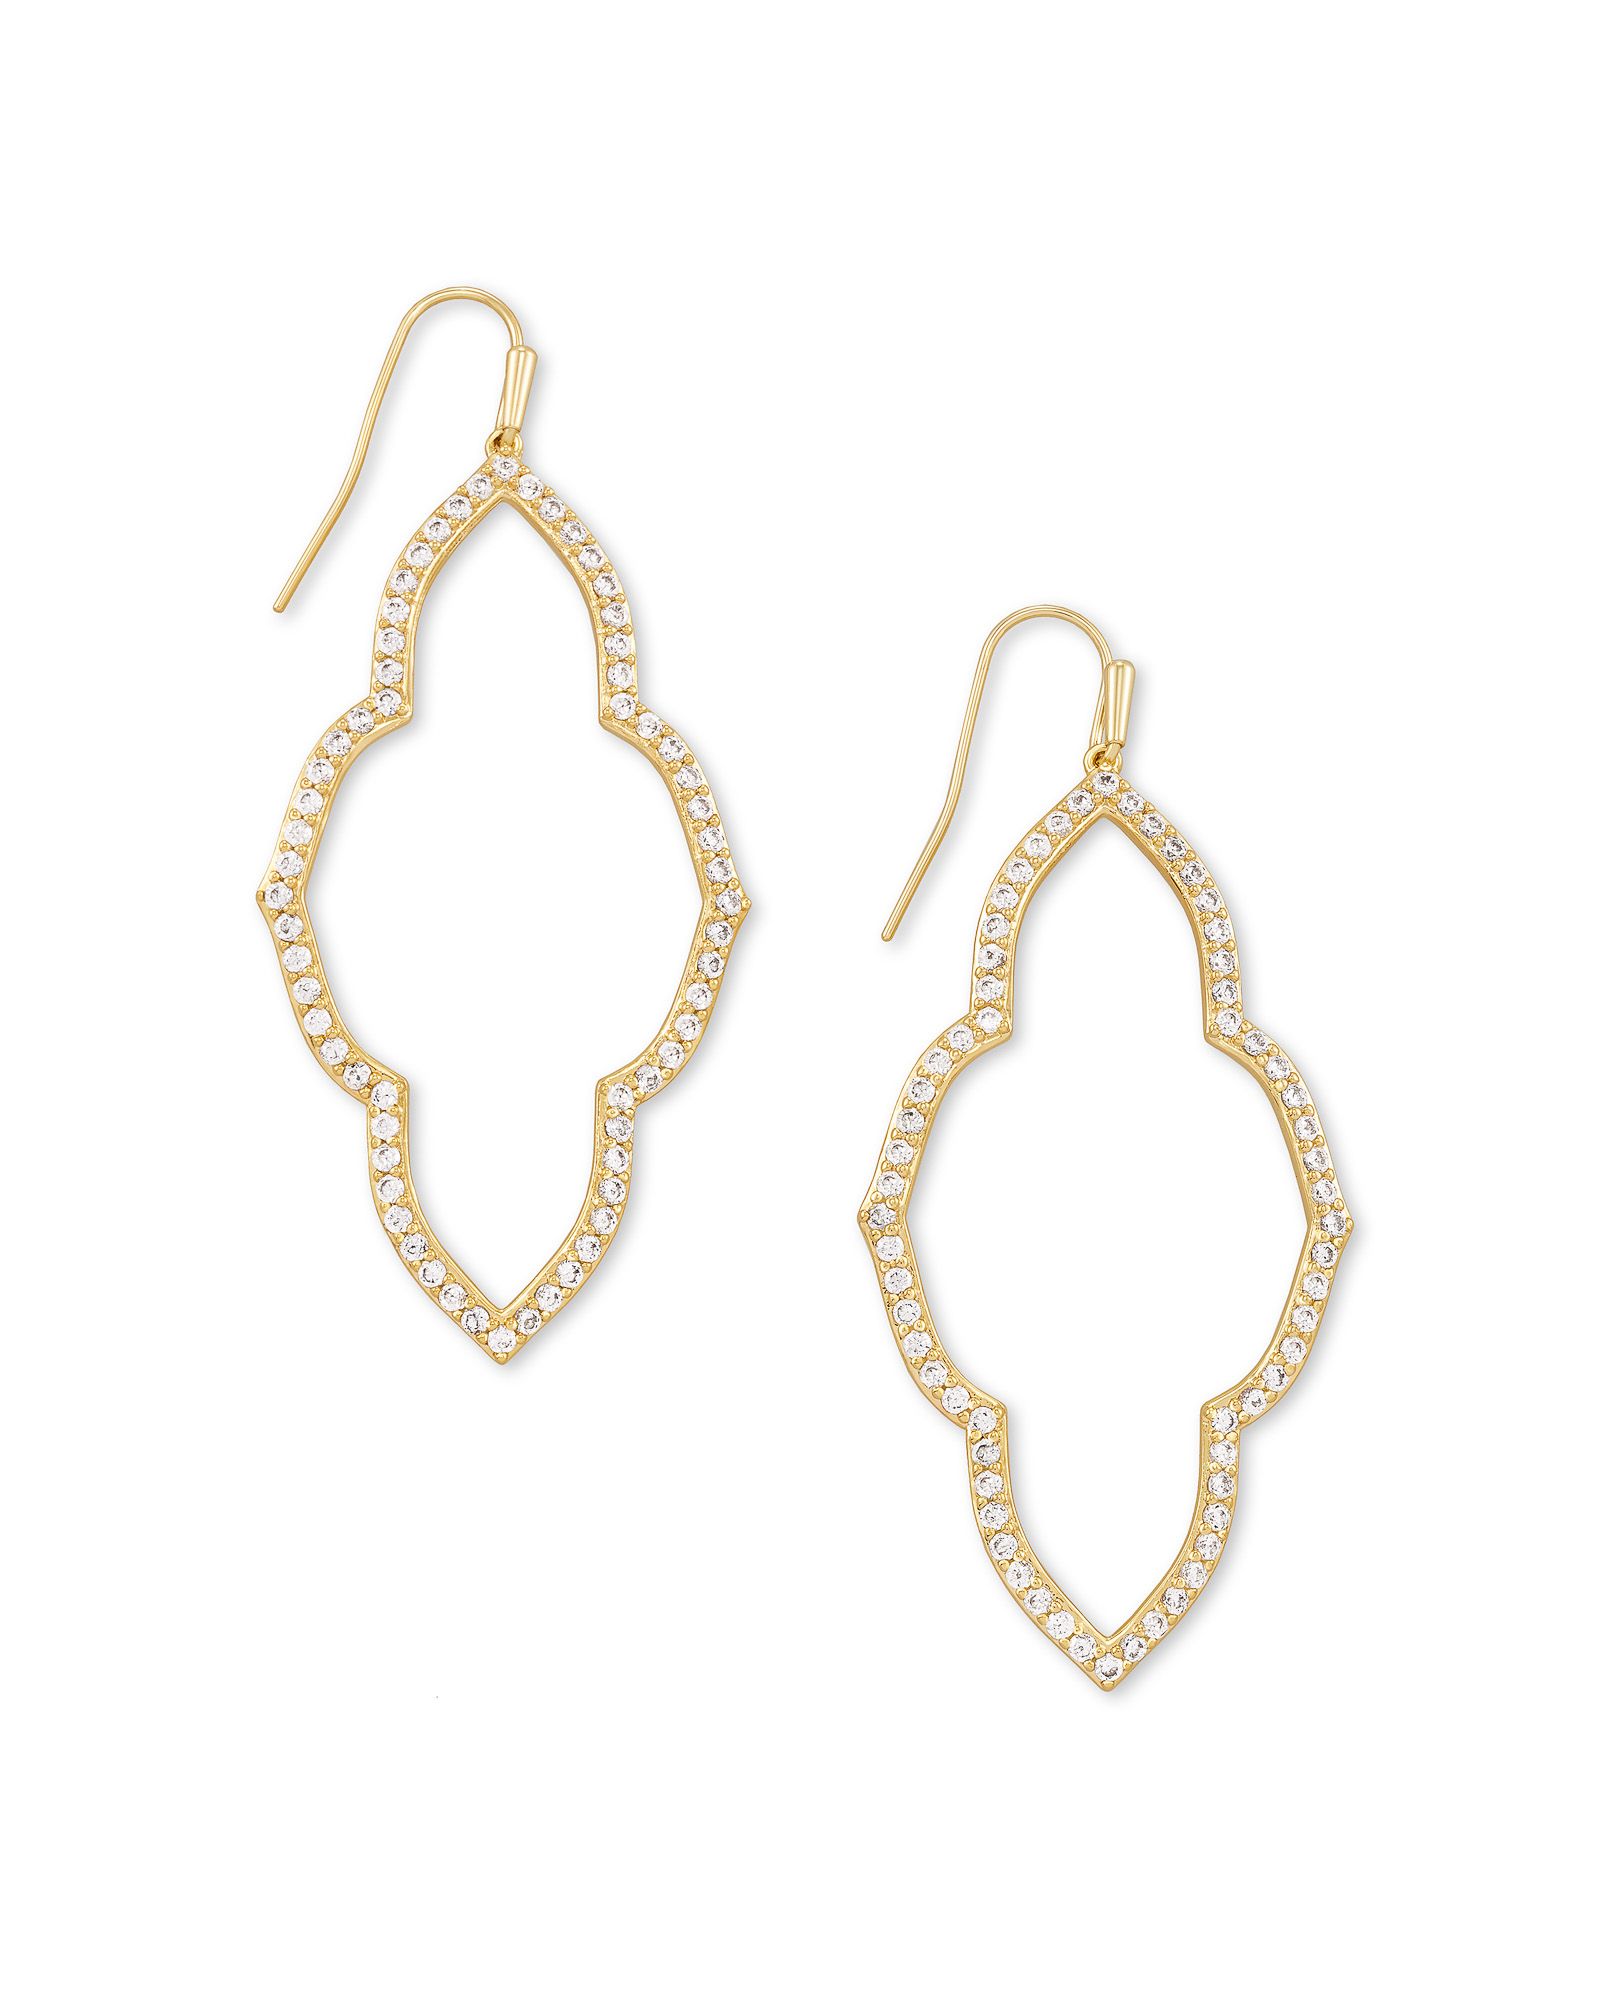 Abbie Gold Open Frame Earrings in White Crystal | Kendra Scott | Kendra Scott